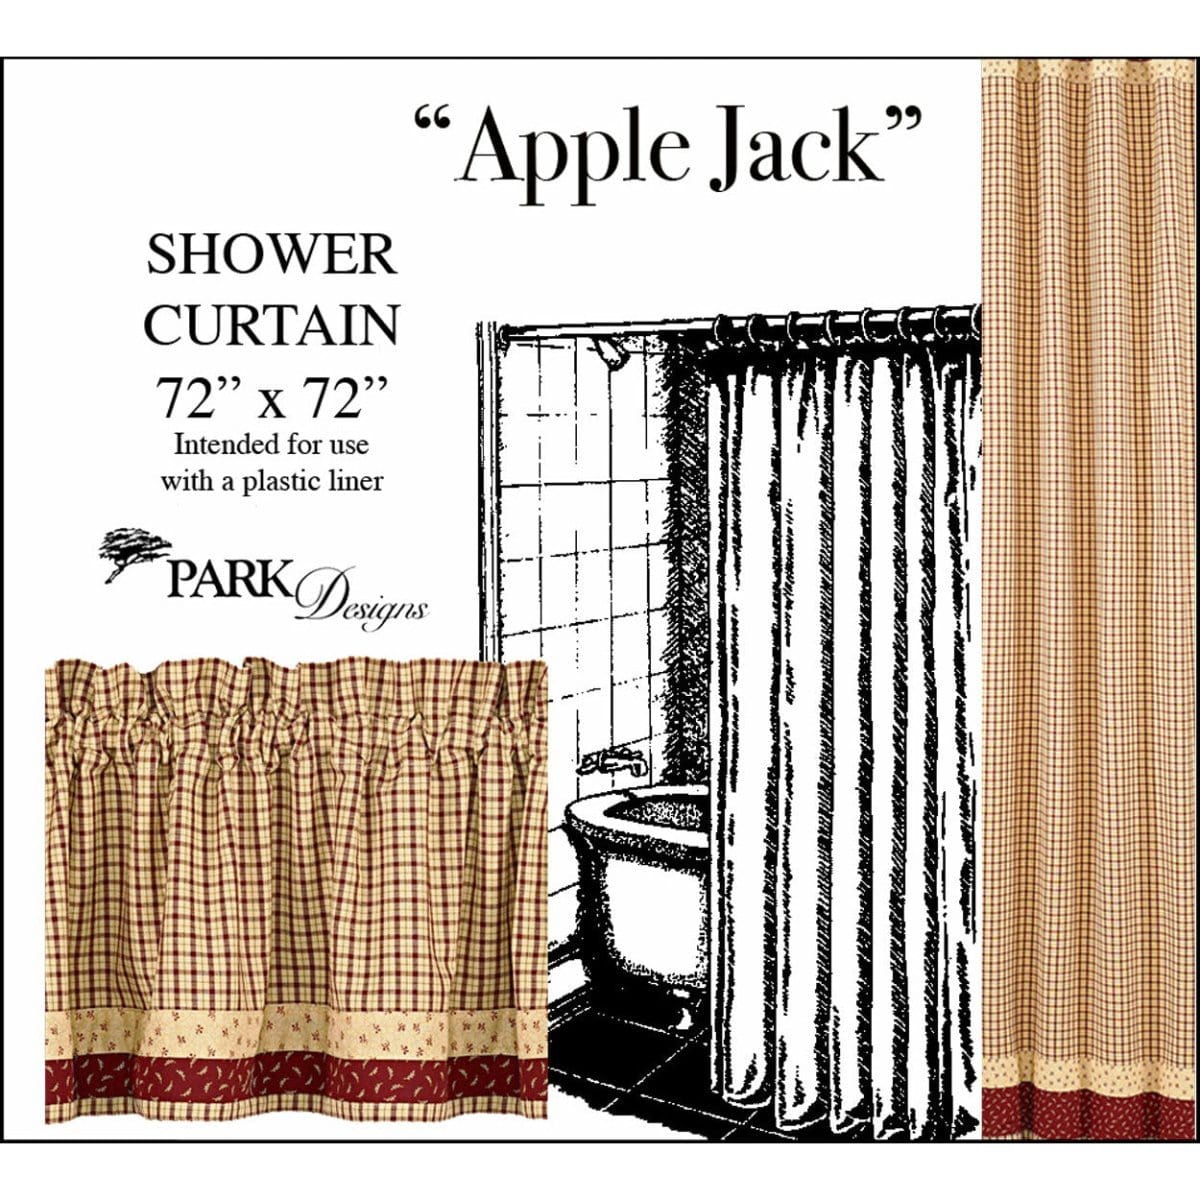 Apple Jack Shower Curtain-Park Designs-The Village Merchant